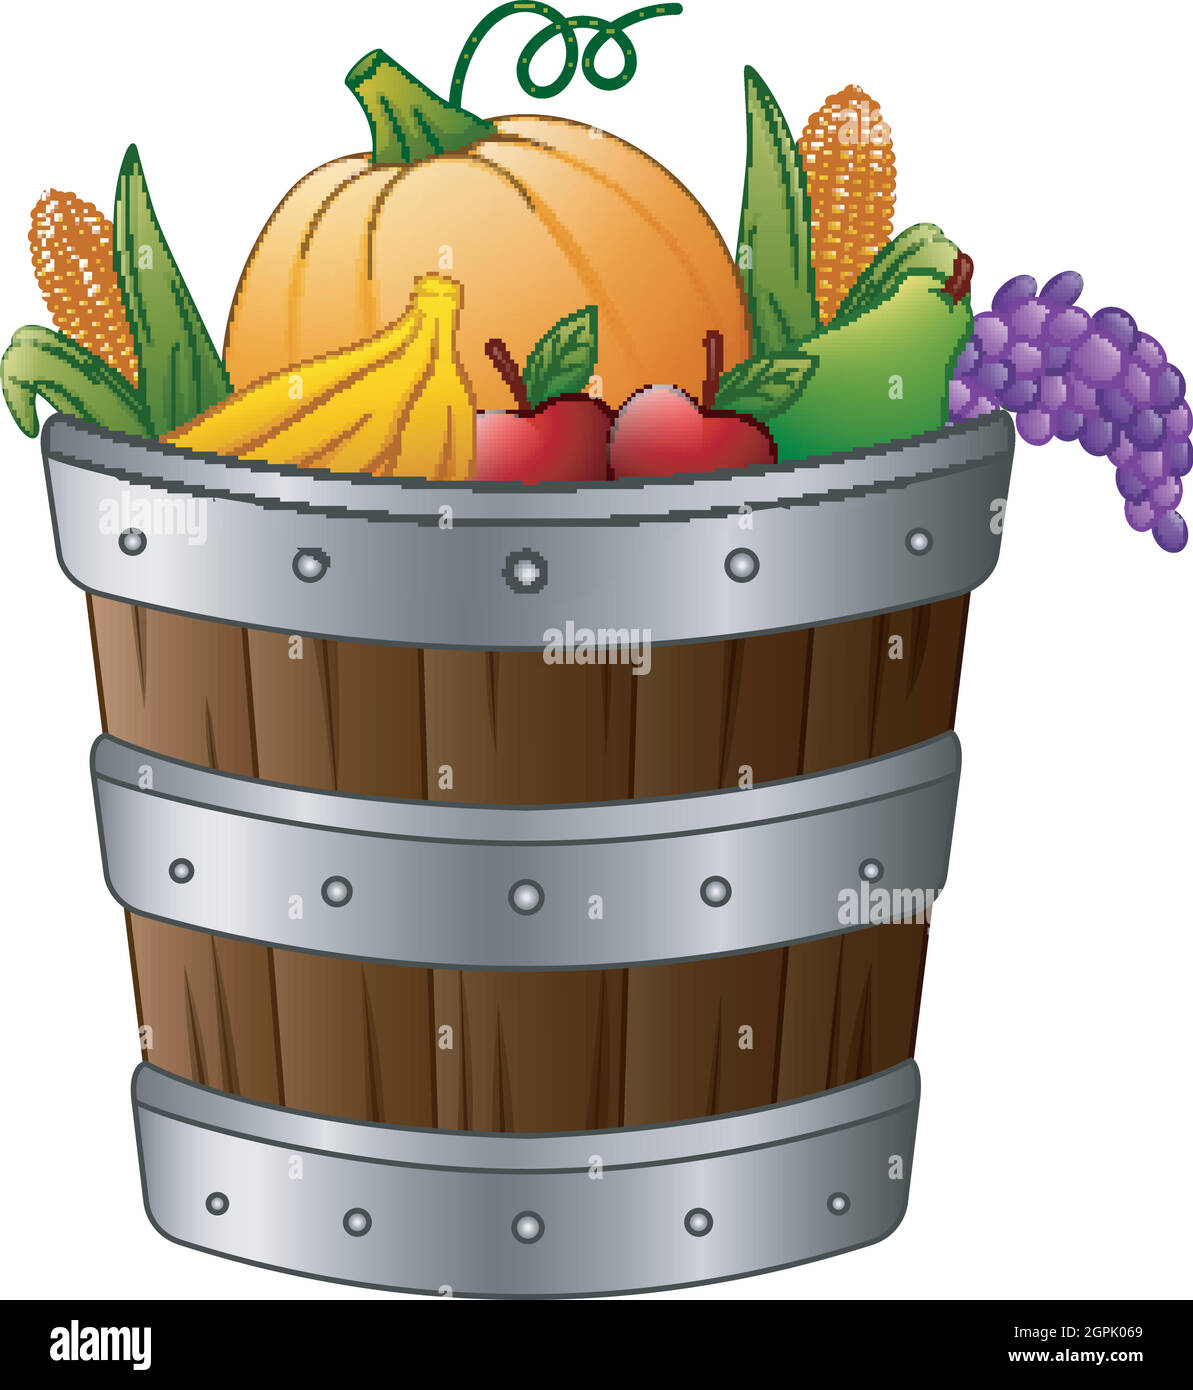 Panier en bois avec fruits et légumes de récolte Illustration de Vecteur